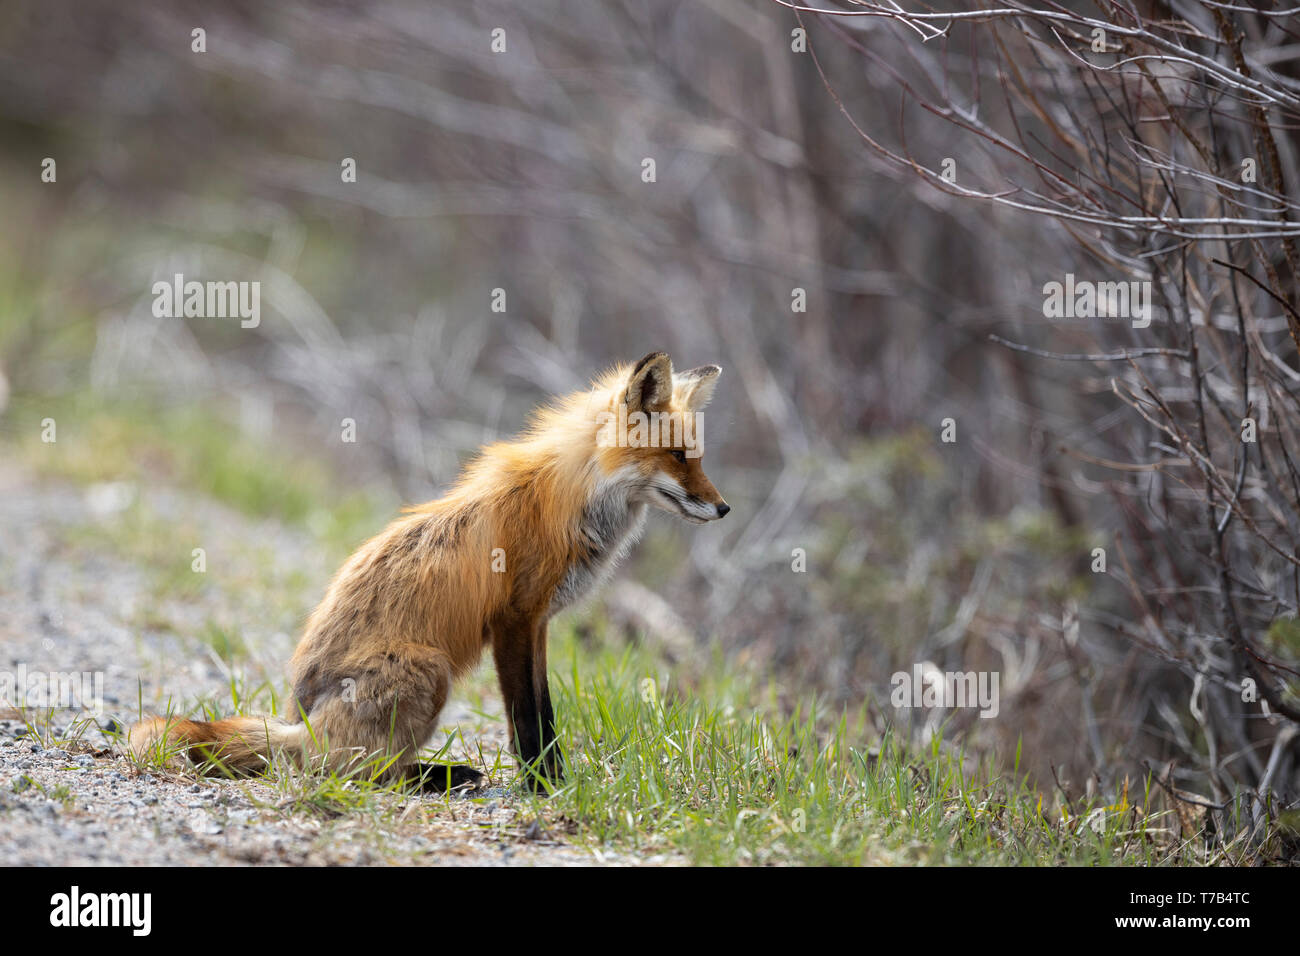 MAYNOOTH, ONTARIO, CANADA - May 04, 2019: A red fox (Vulpes Vulpes